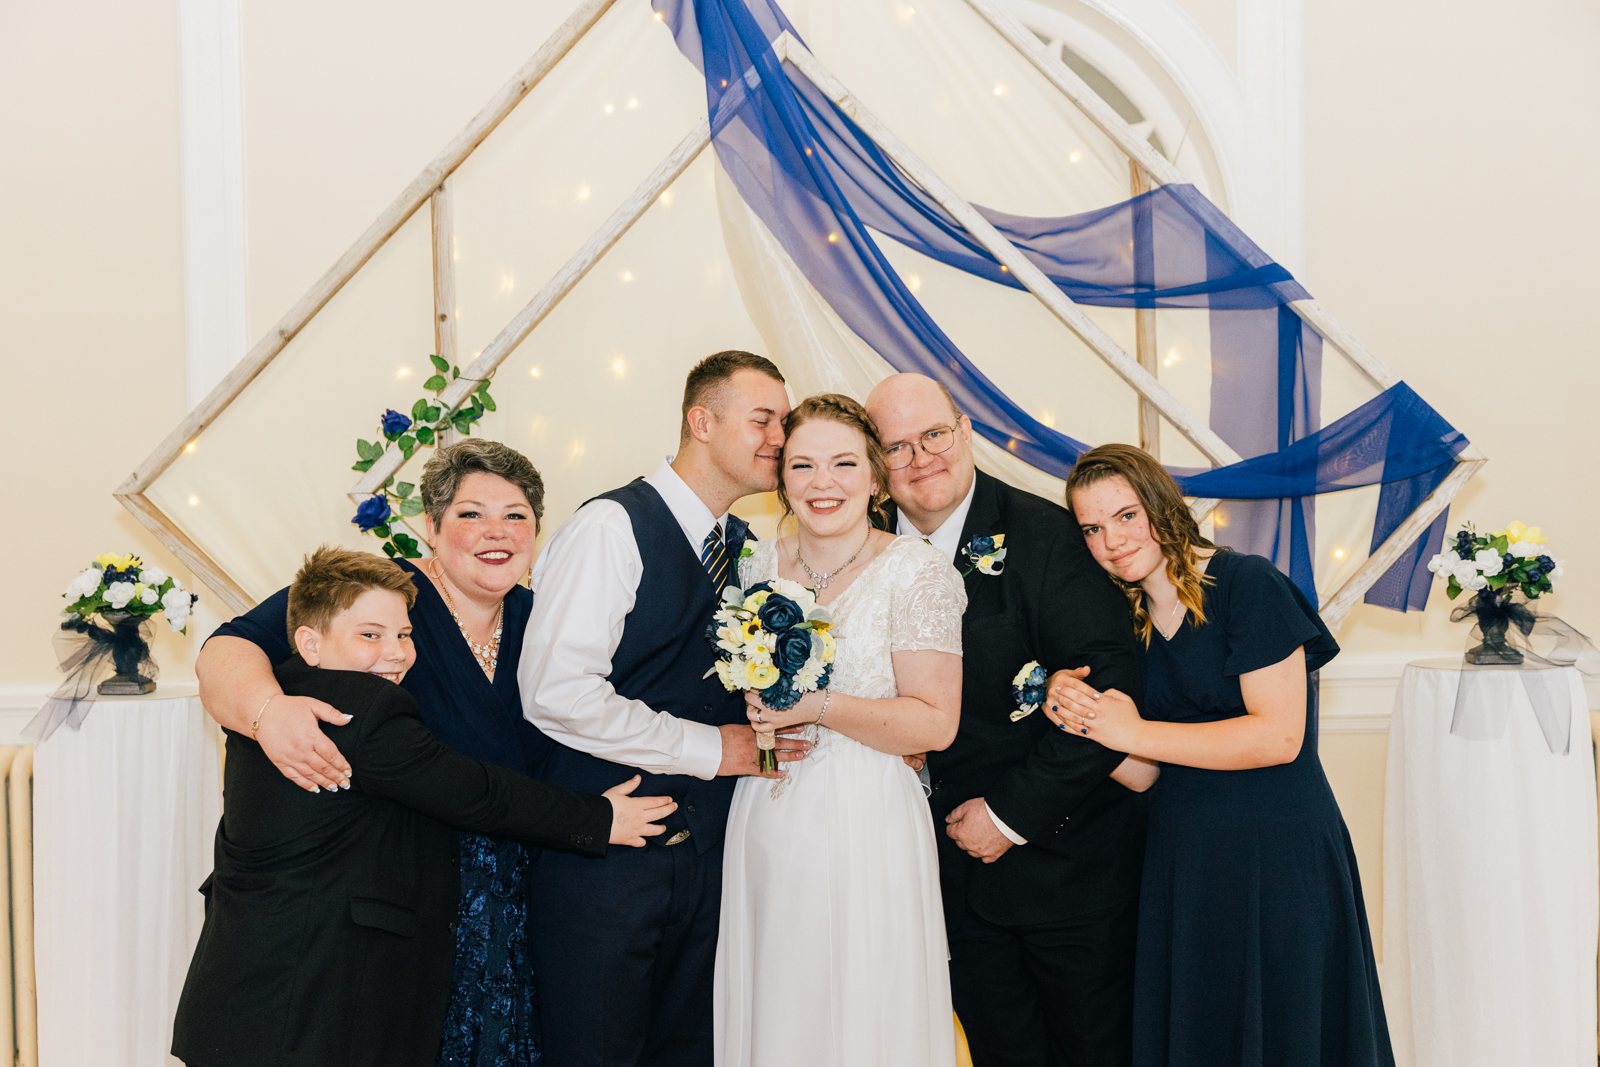 Jackson Hole wedding photographer captures brides family hugging